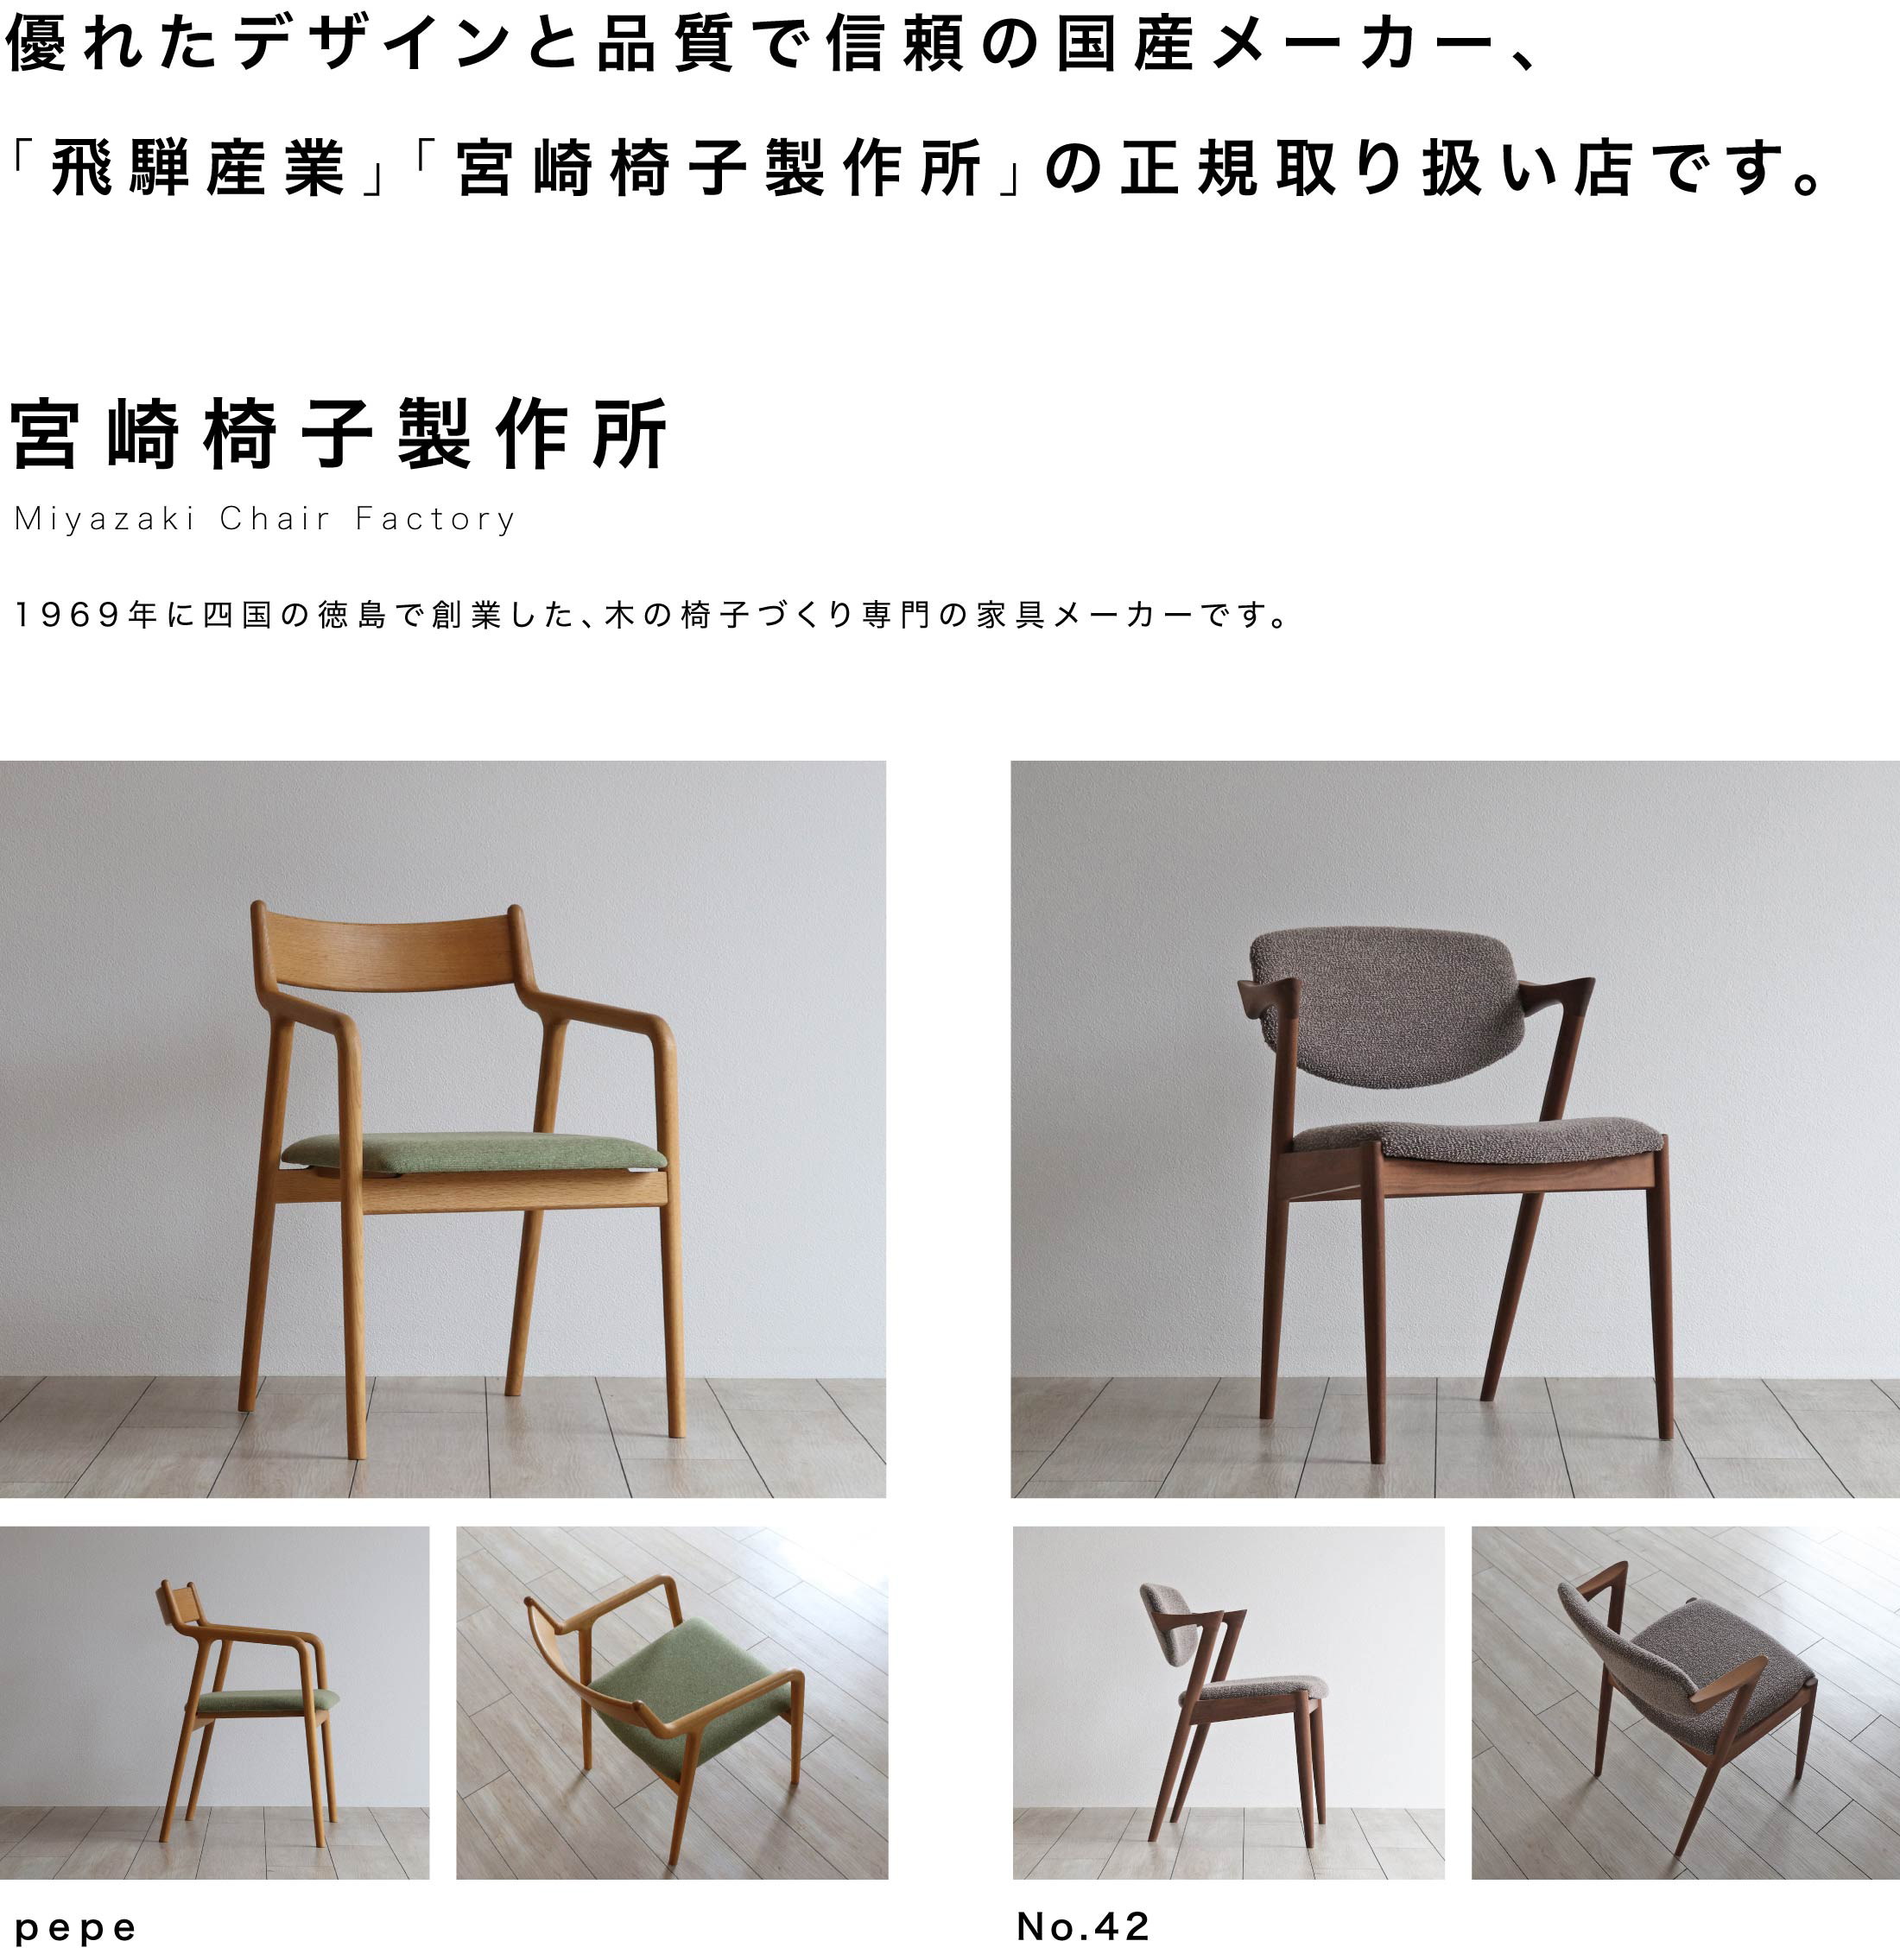 四国の徳島で創業した、木の椅子づくり専門のメーカー。